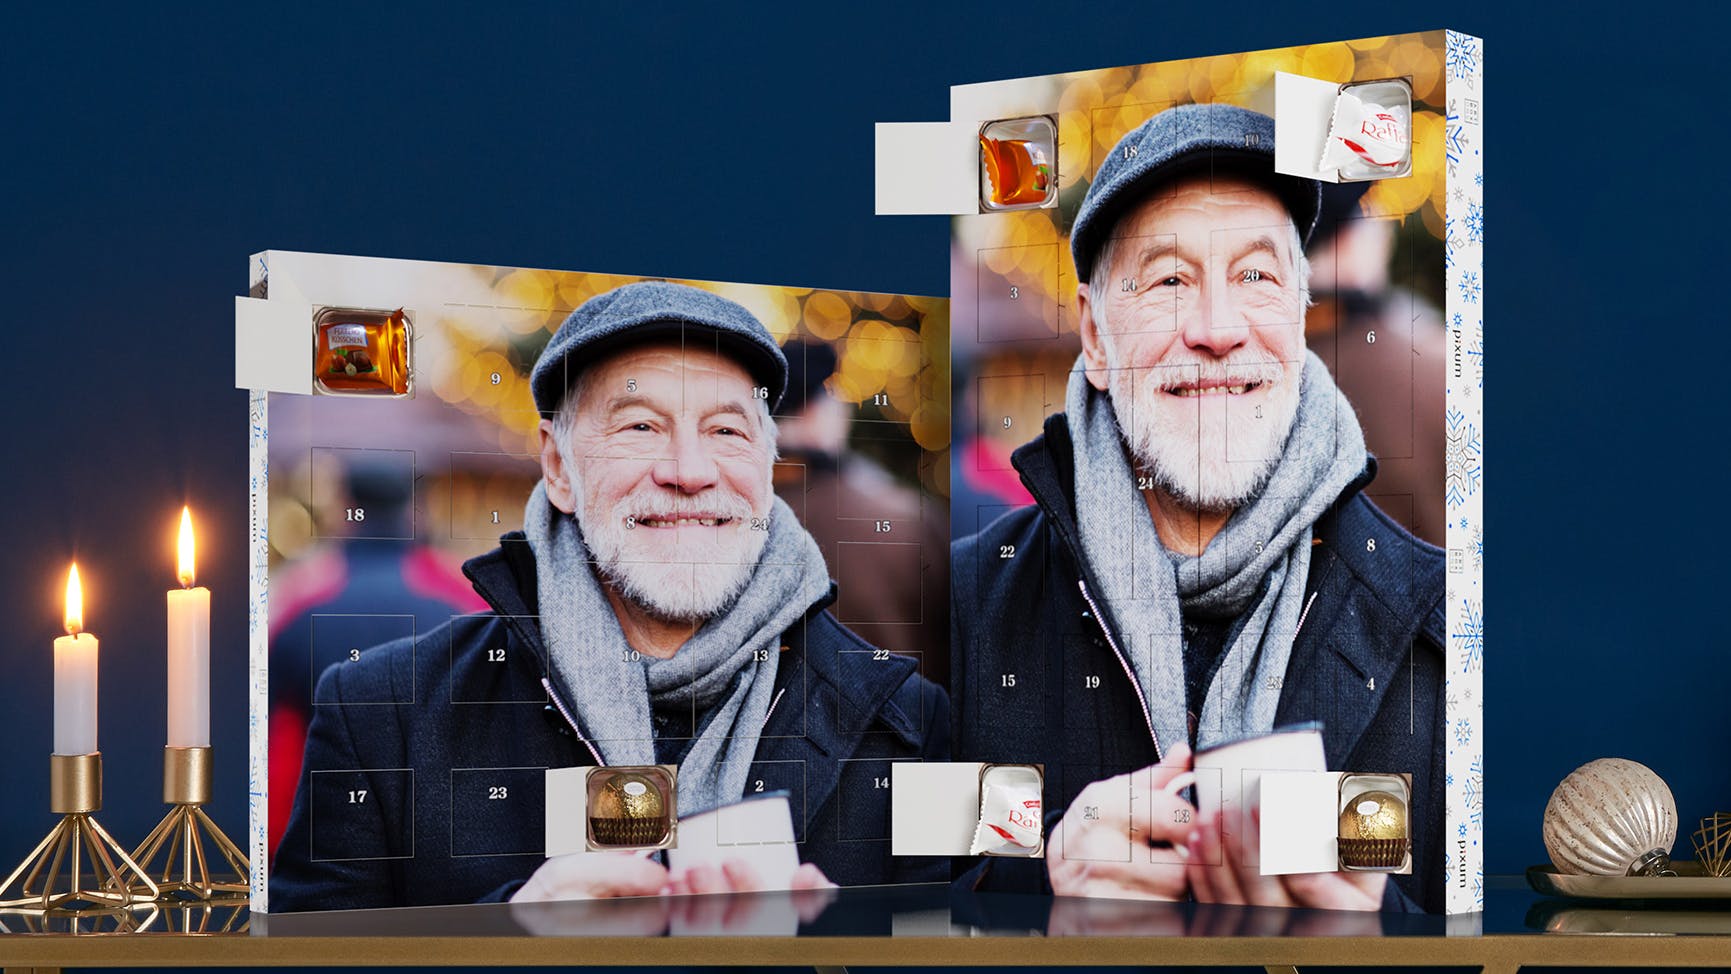 Calendrier de l'Avent avec chocolats Ferrero et une photo d'un homme âgé souriant